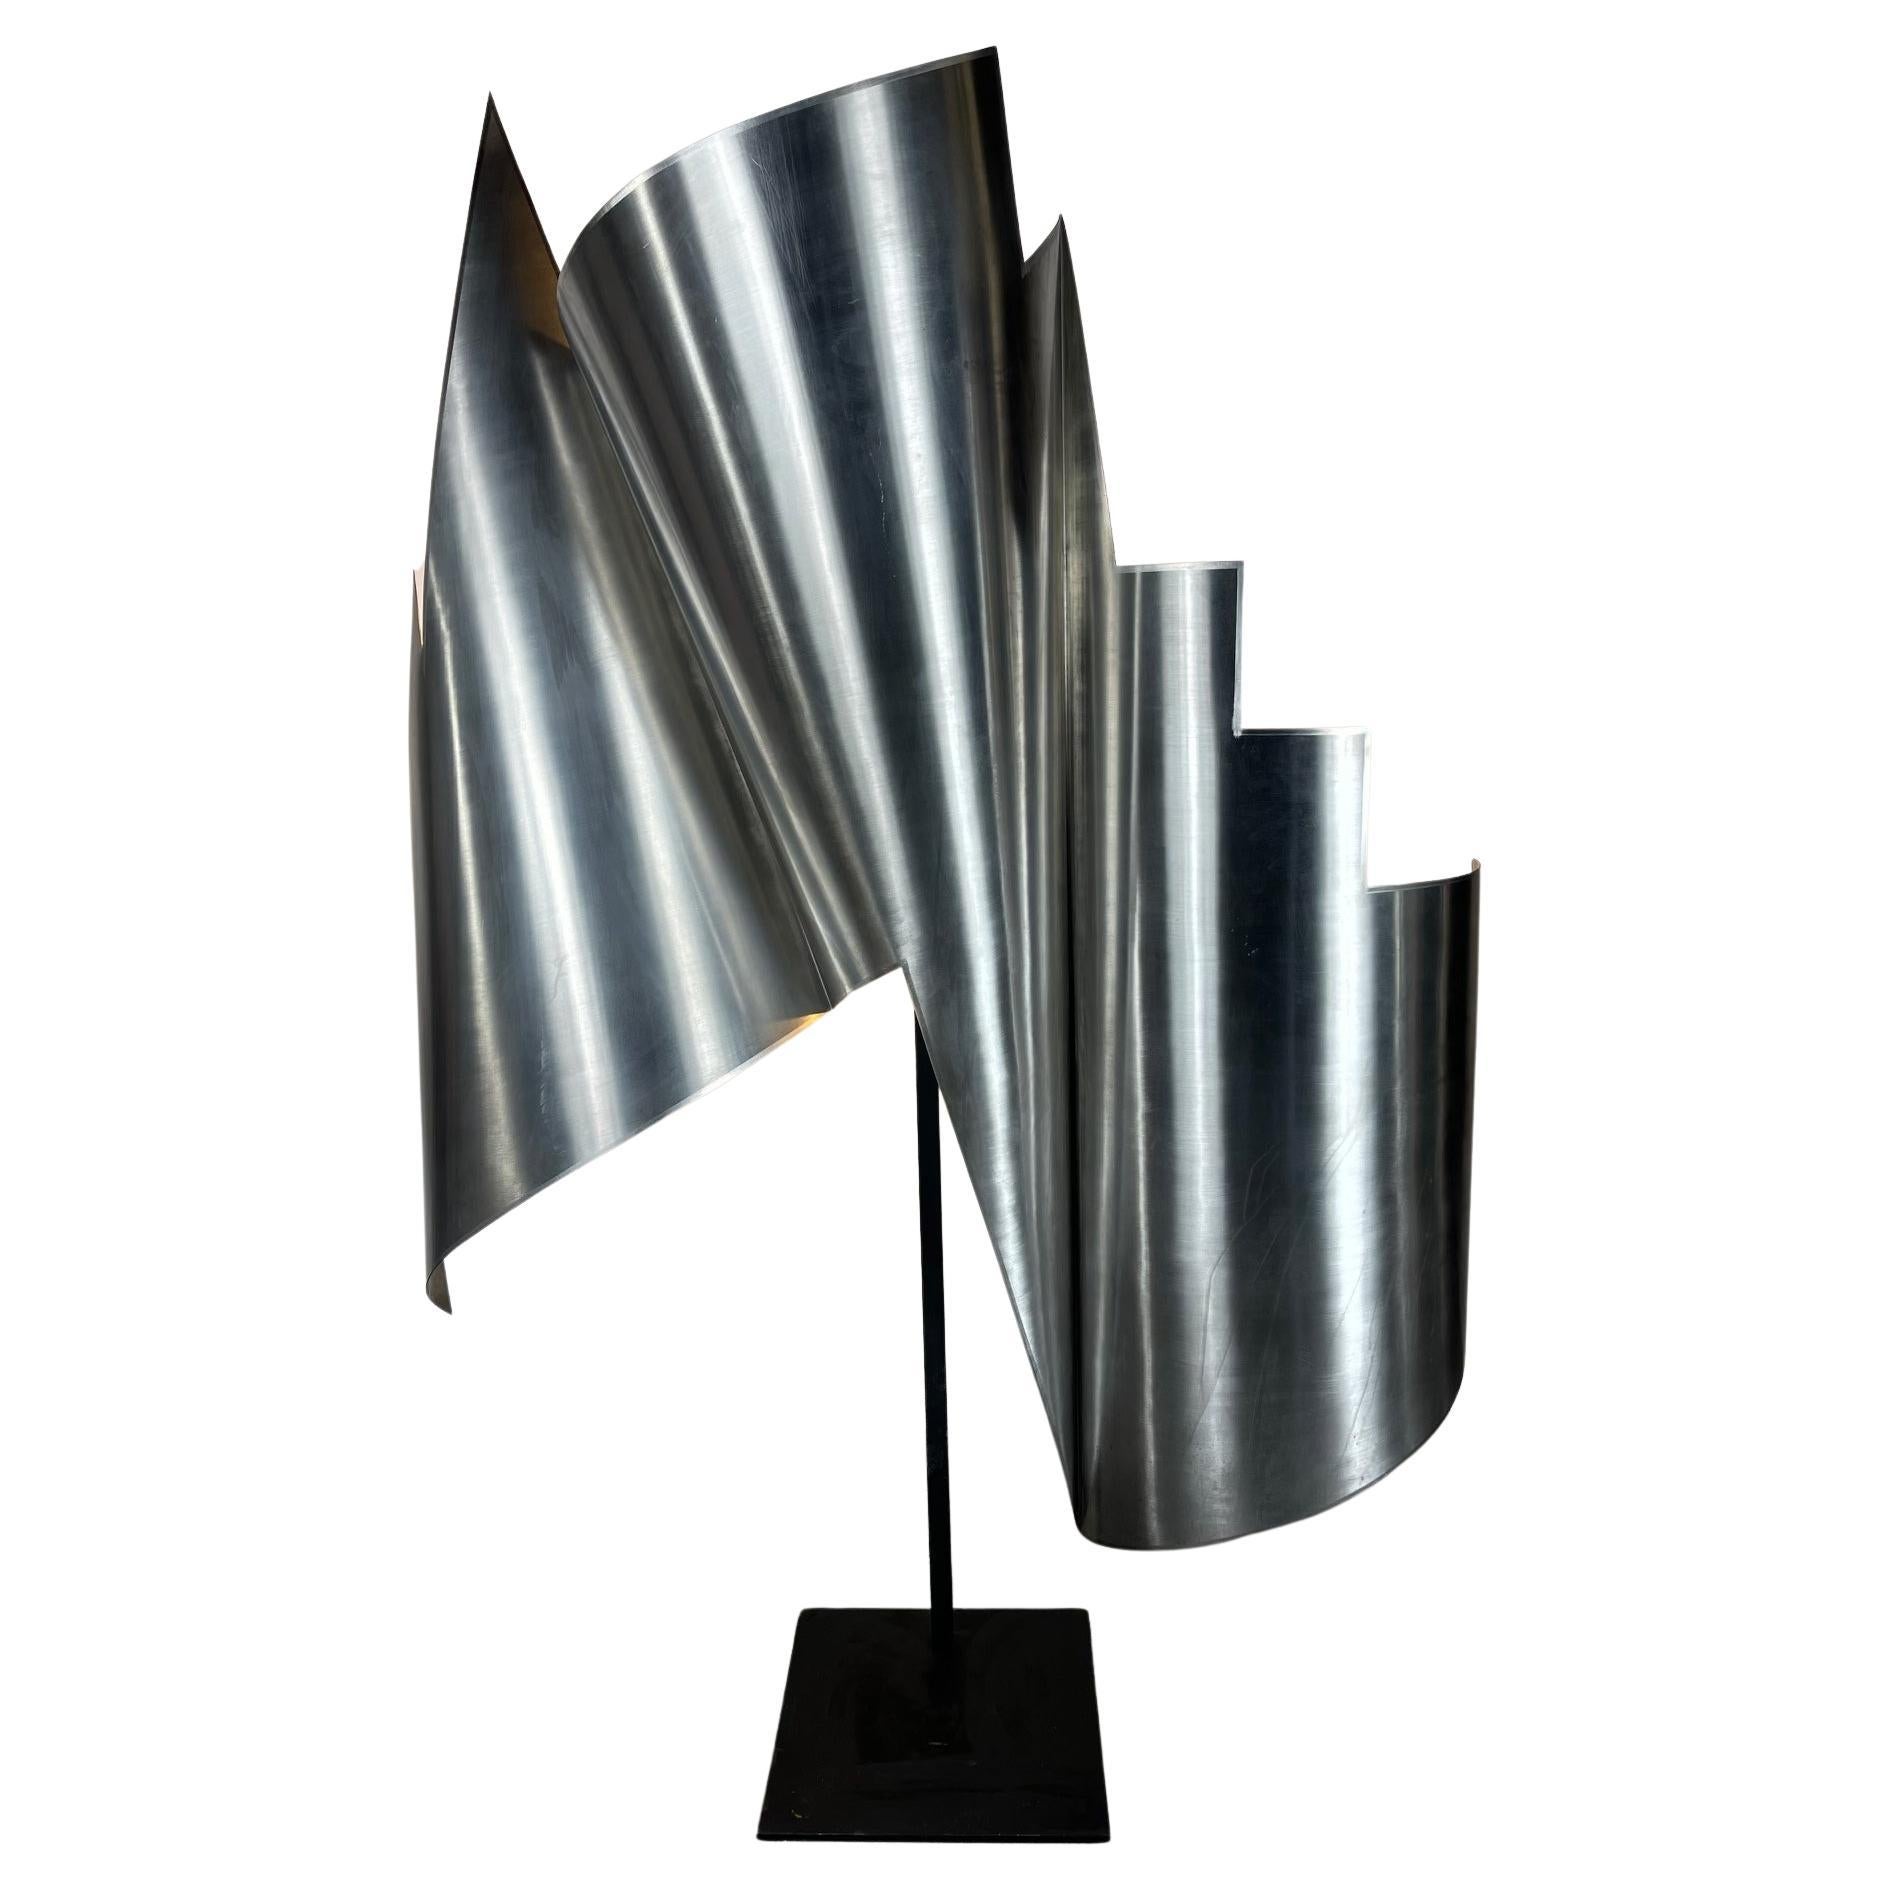  Monumentale modernistische abstrakte gerollte Stahlskulptur/Lampe, signiert ? New York